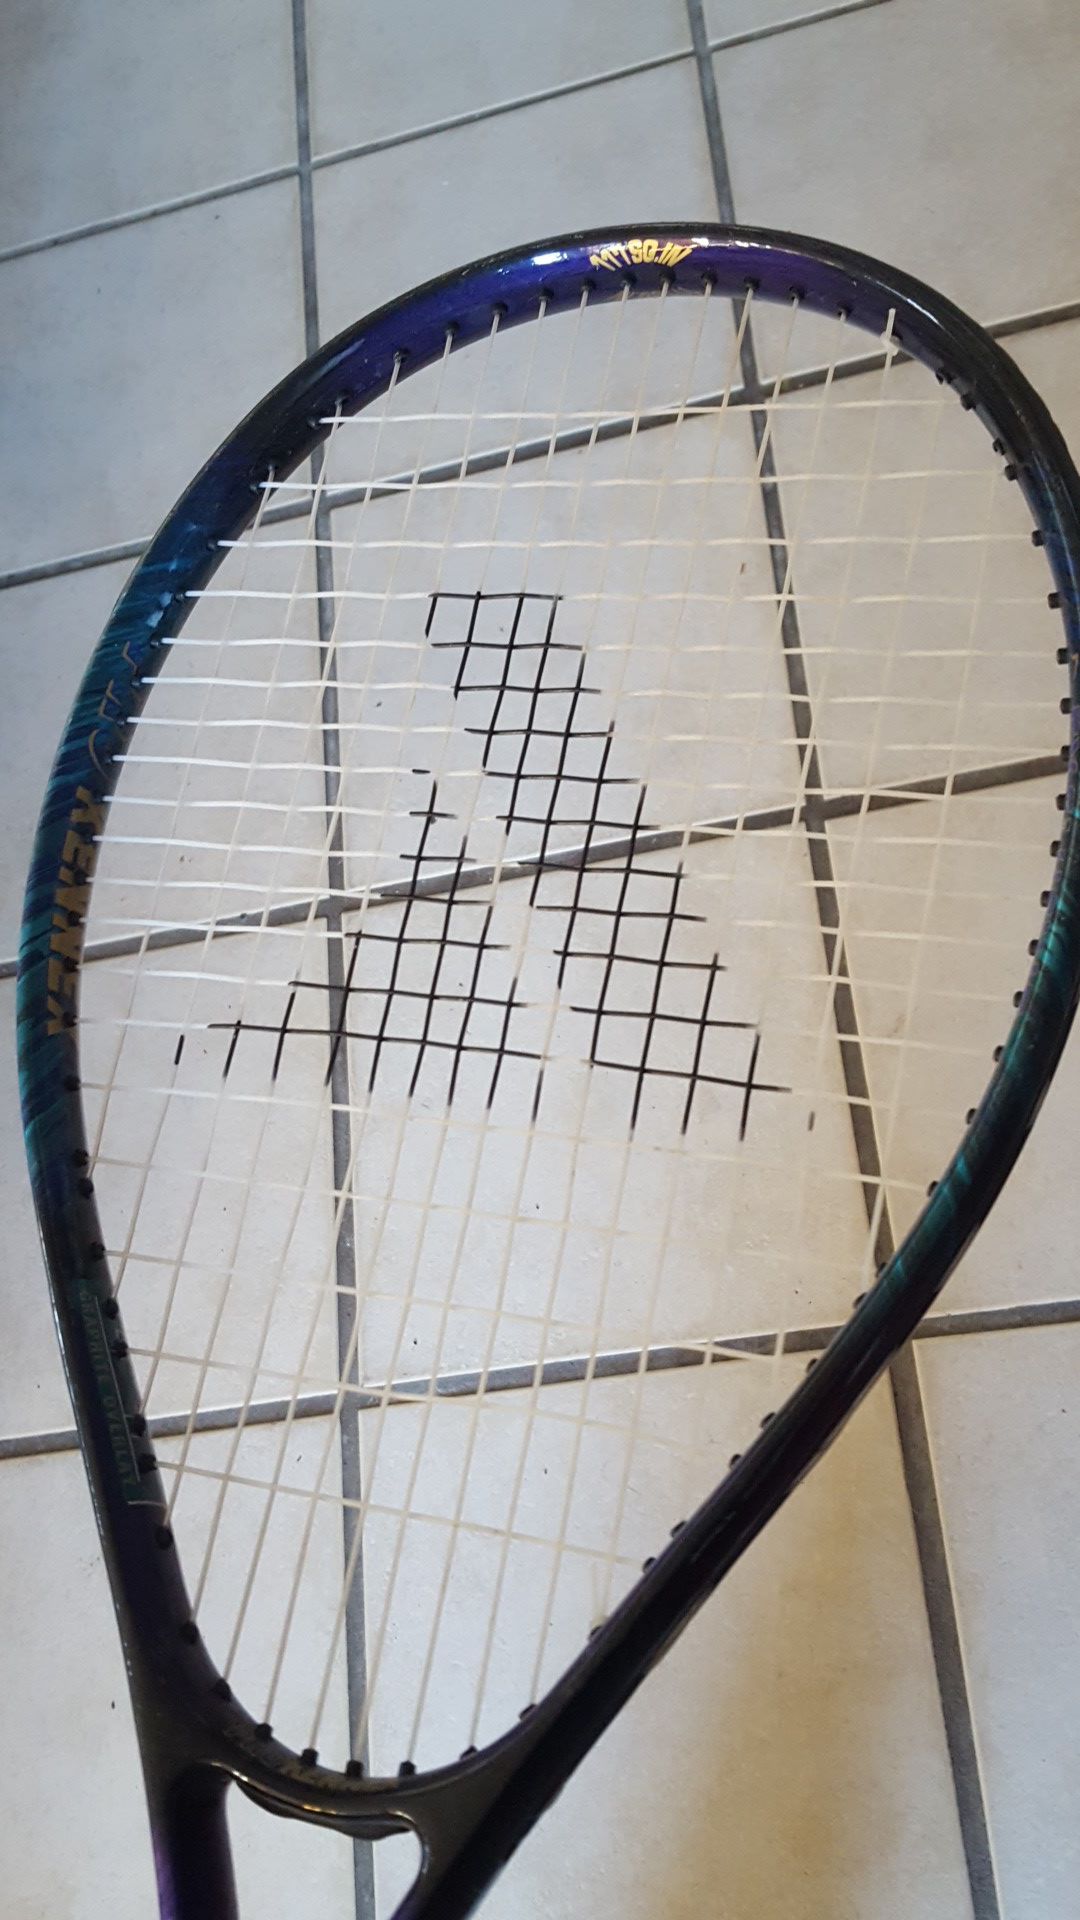 Pro Kennex tennis racket